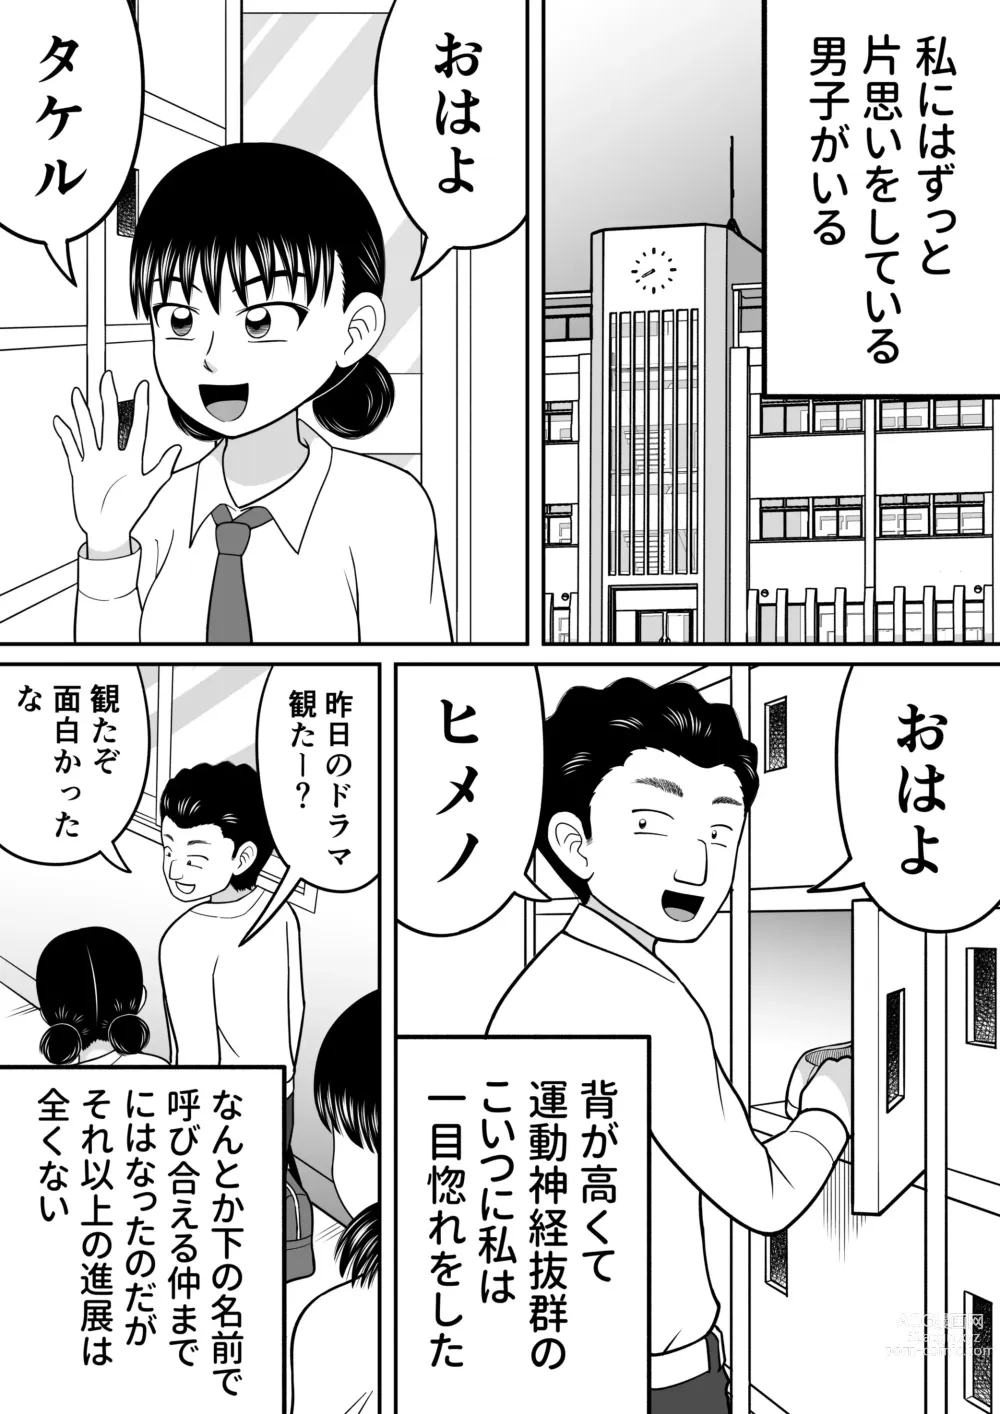 Page 2 of doujinshi Zenra Shoujo 2